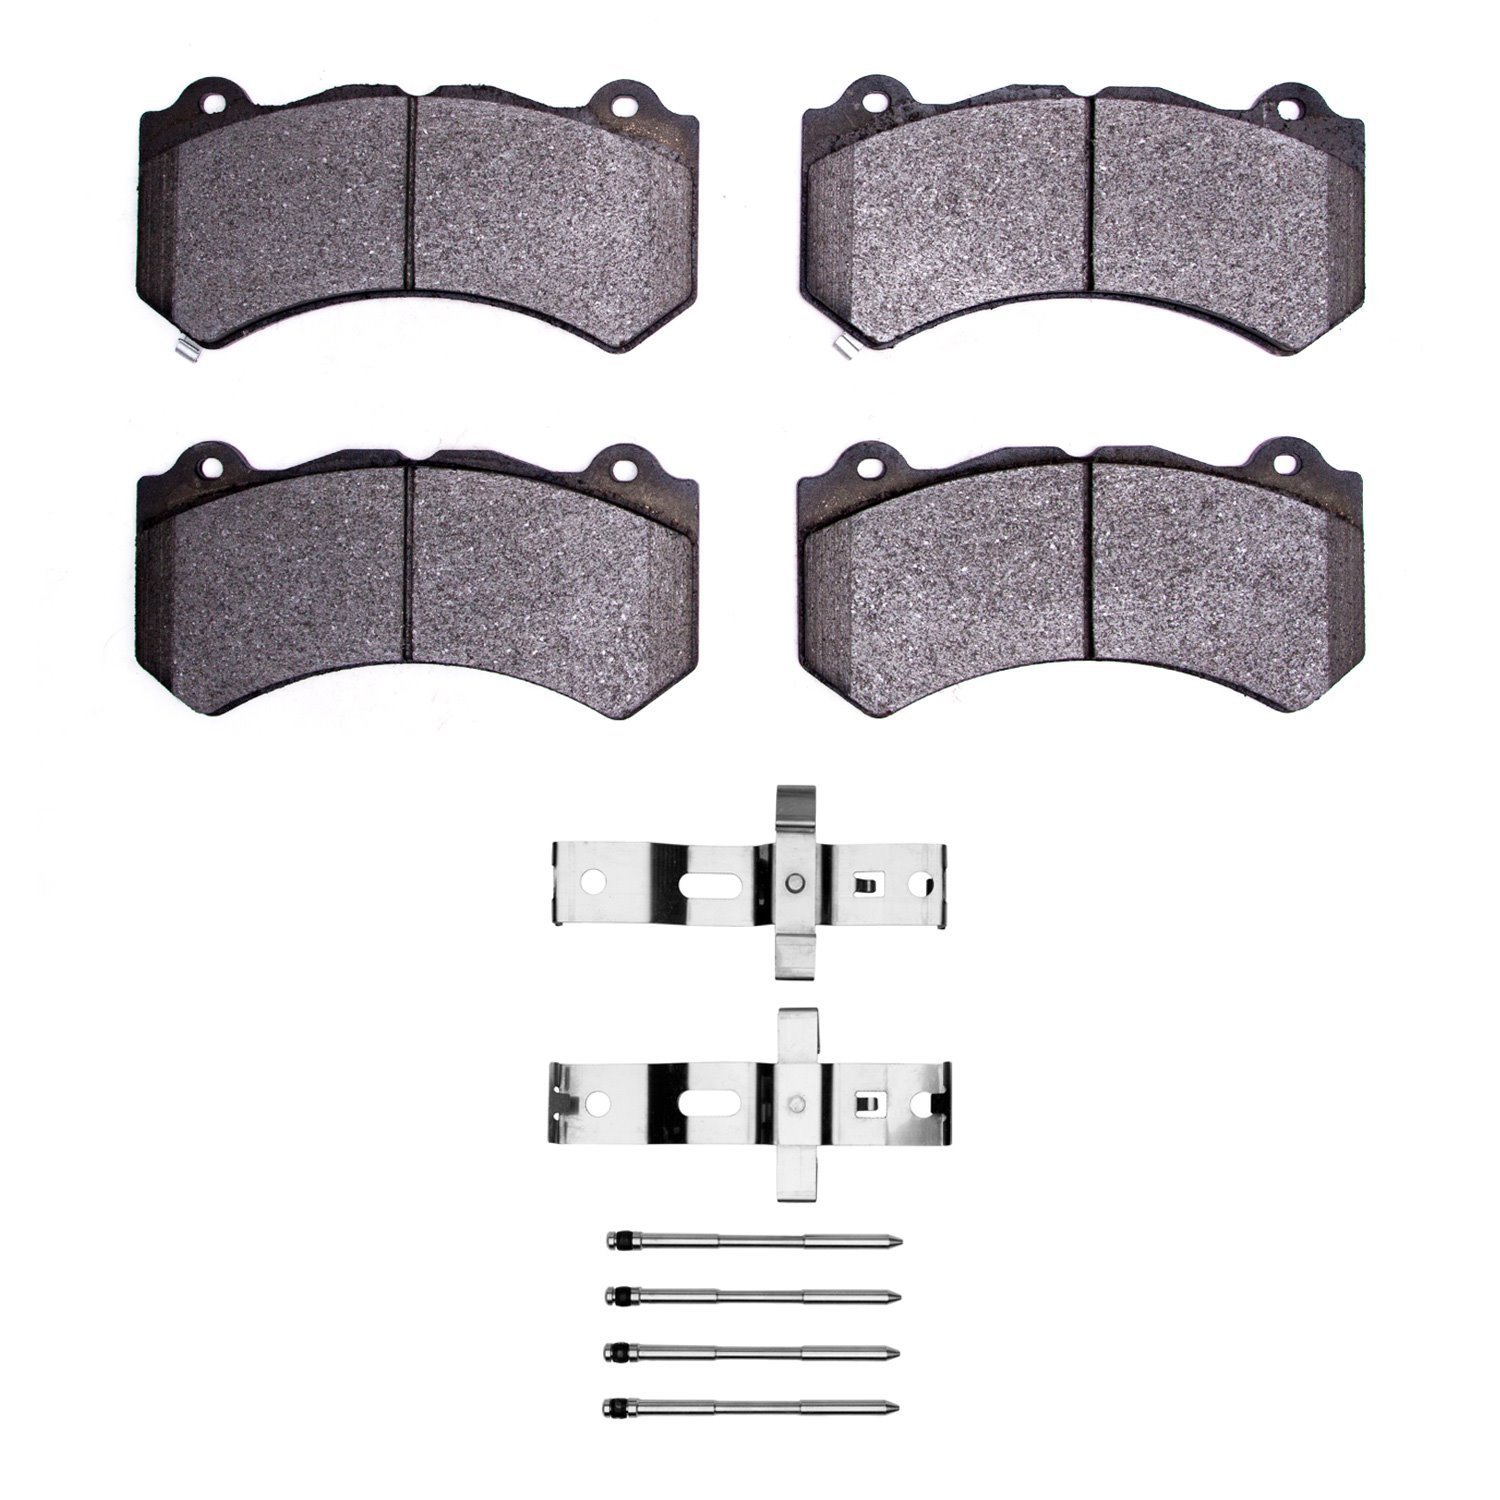 3000-Series Ceramic Brake Pads & Hardware Kit, Fits